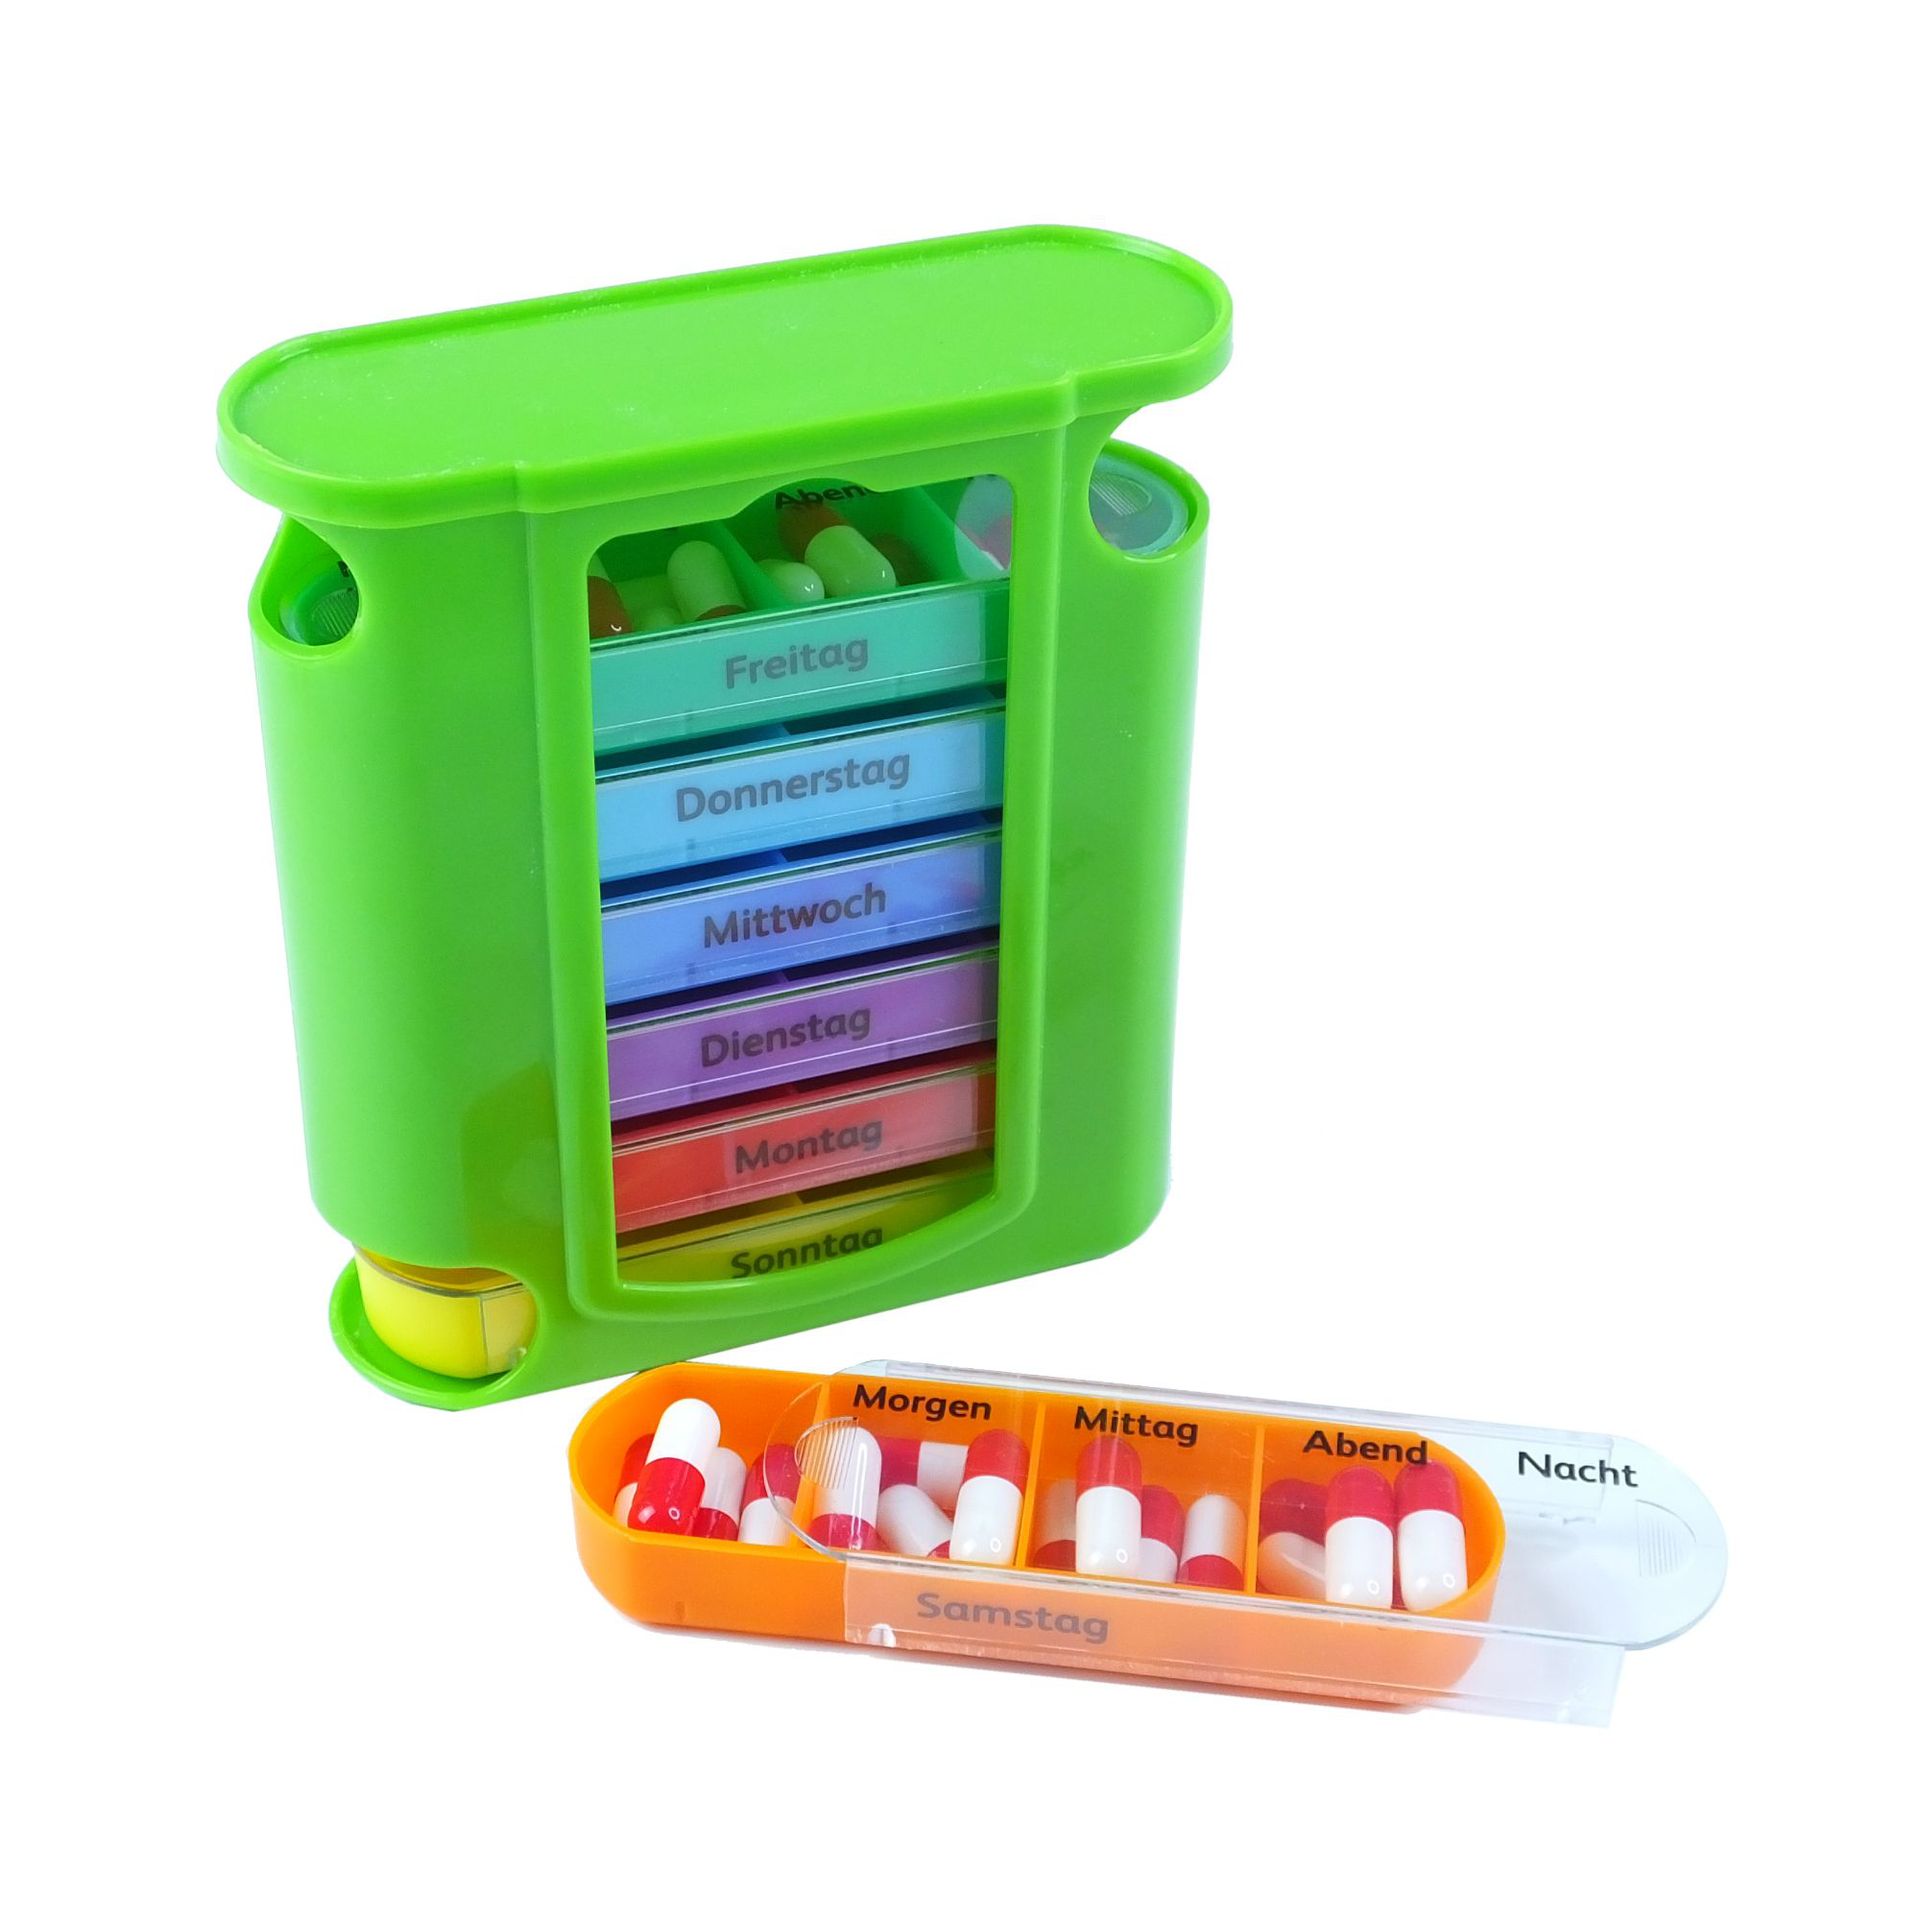 抽拉式彩色藥盒